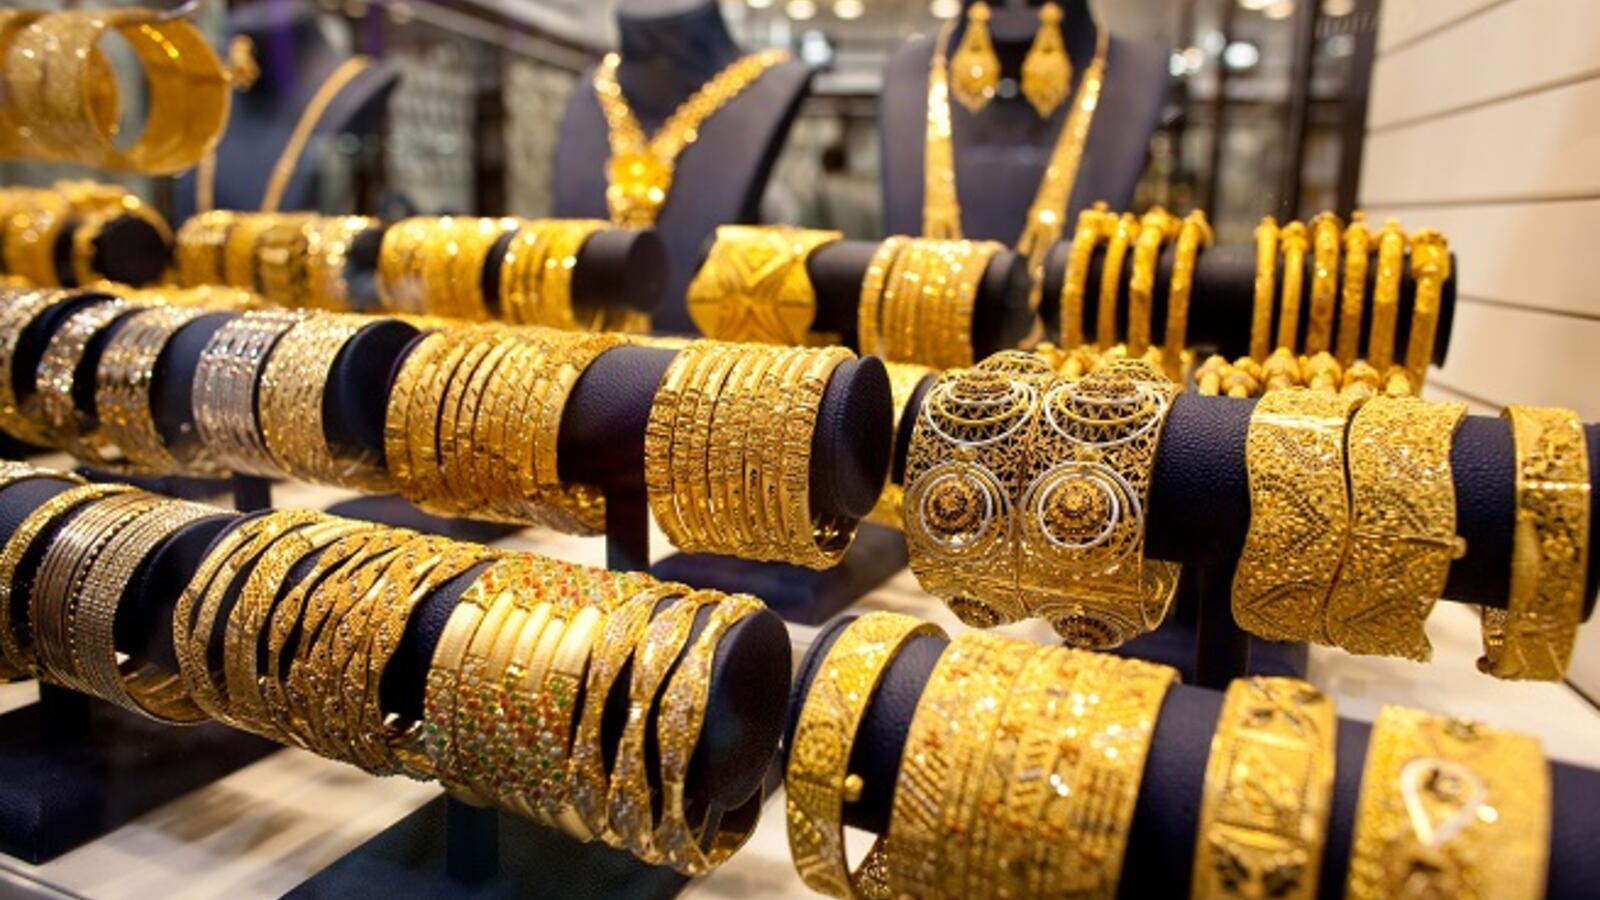 سعر الذهب في عمان